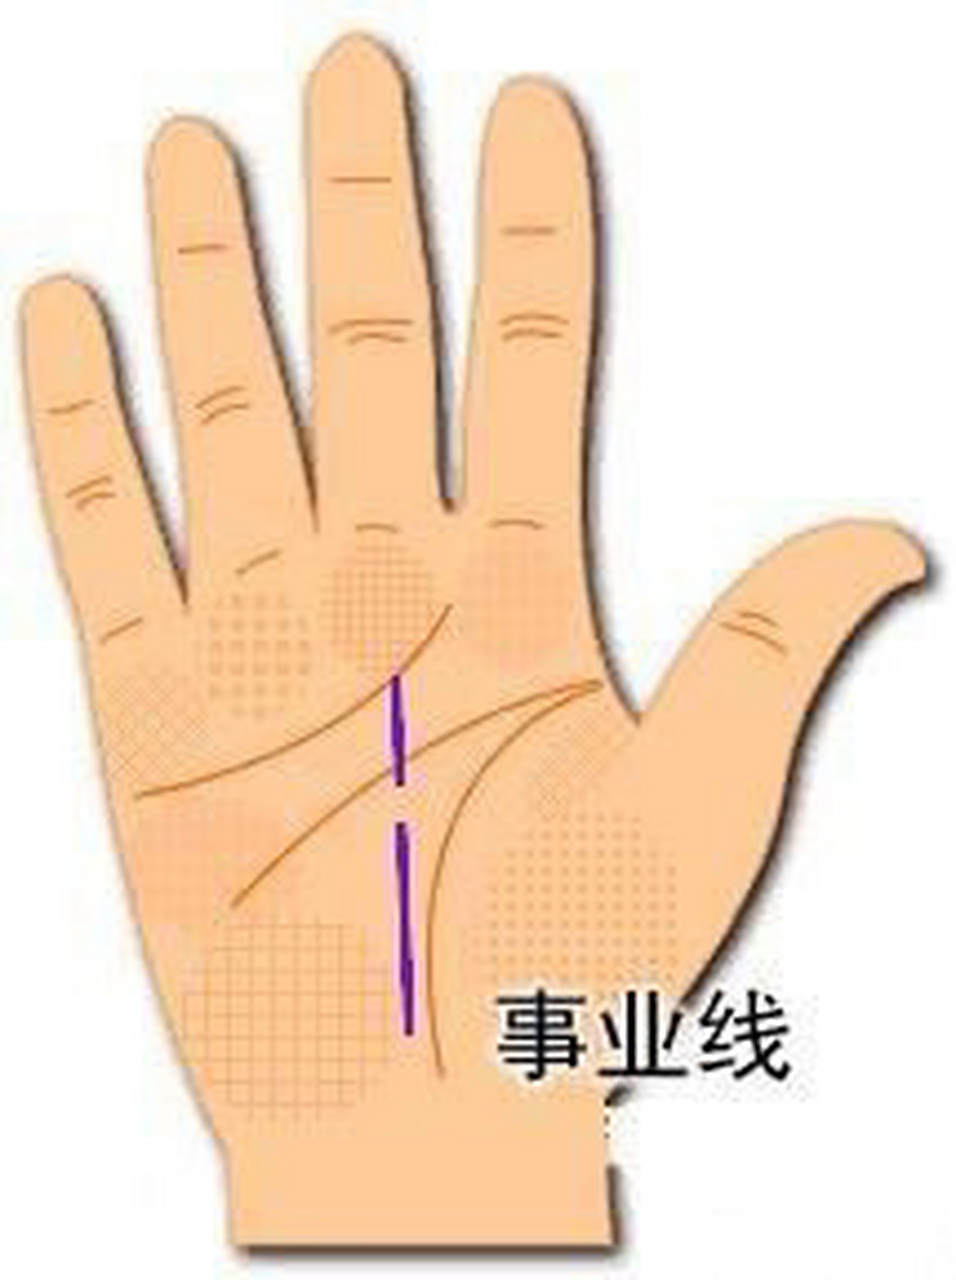 一,事业线是哪一条:手掌心下方向上延伸至中指下端的手纹线.